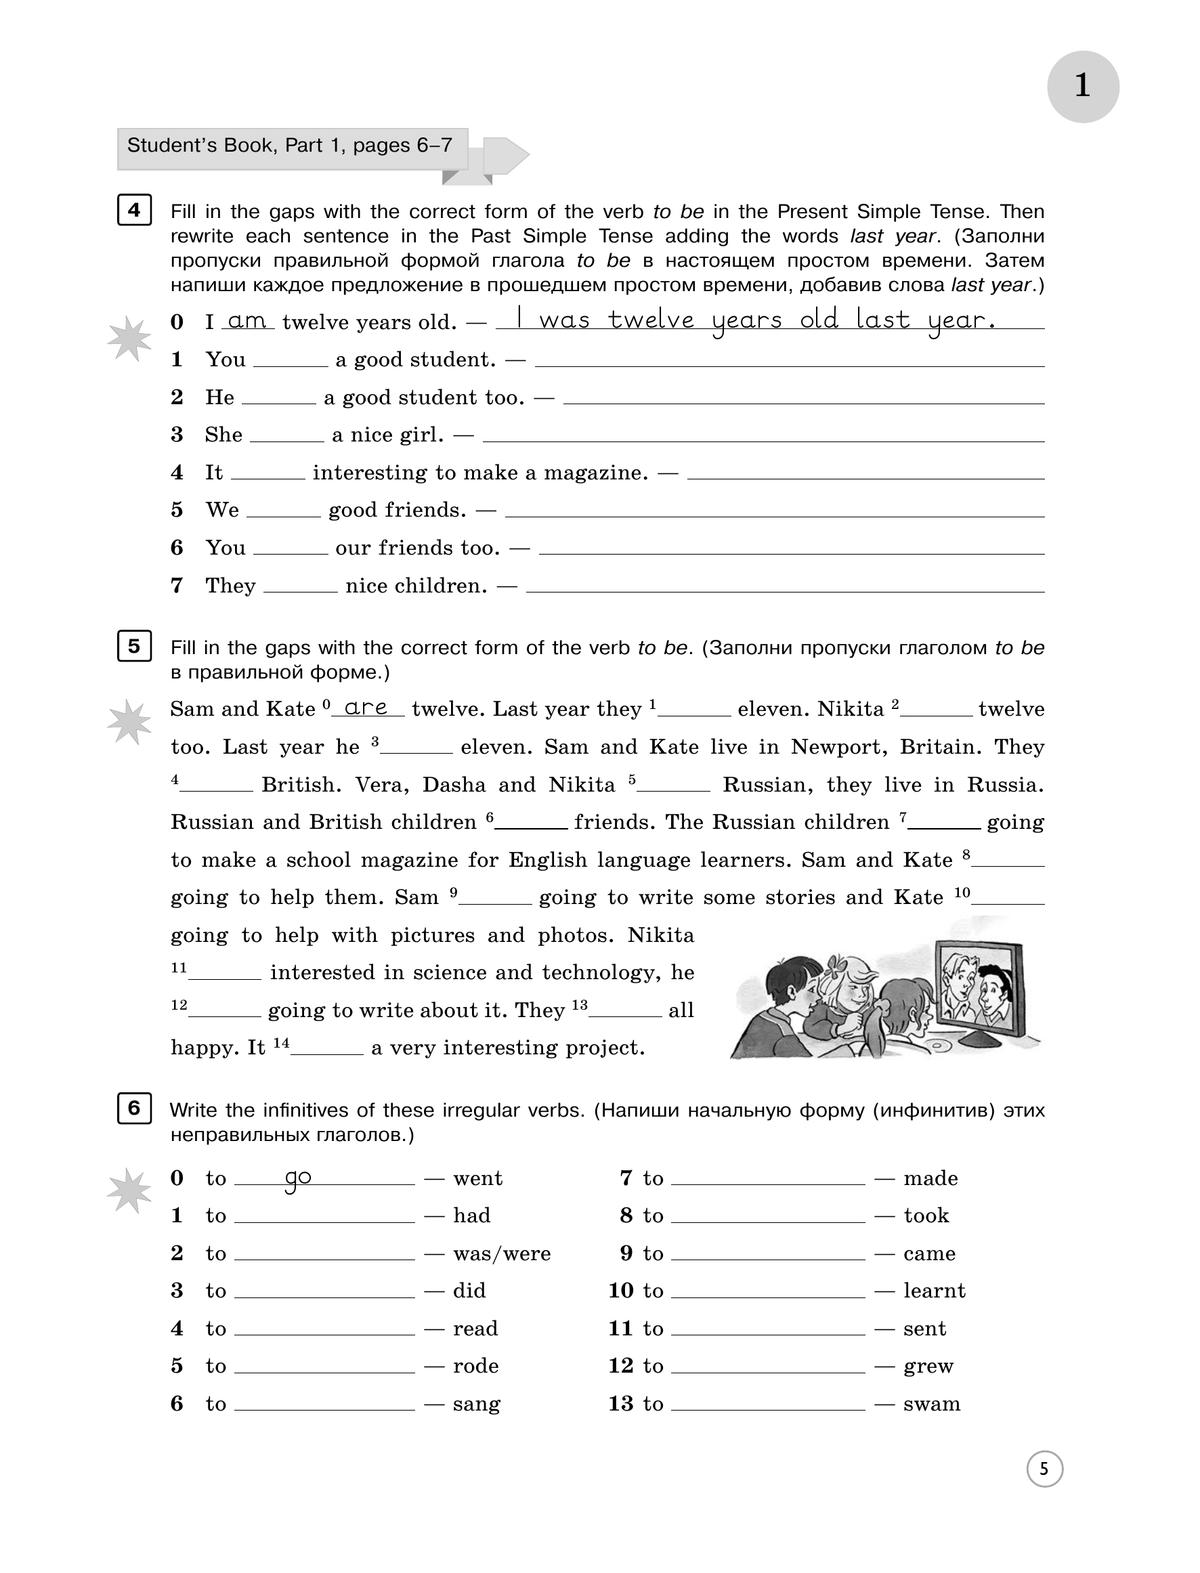 Английский язык. Практикум: лексика и грамматика. Сборник упражнений. 5 класс 10